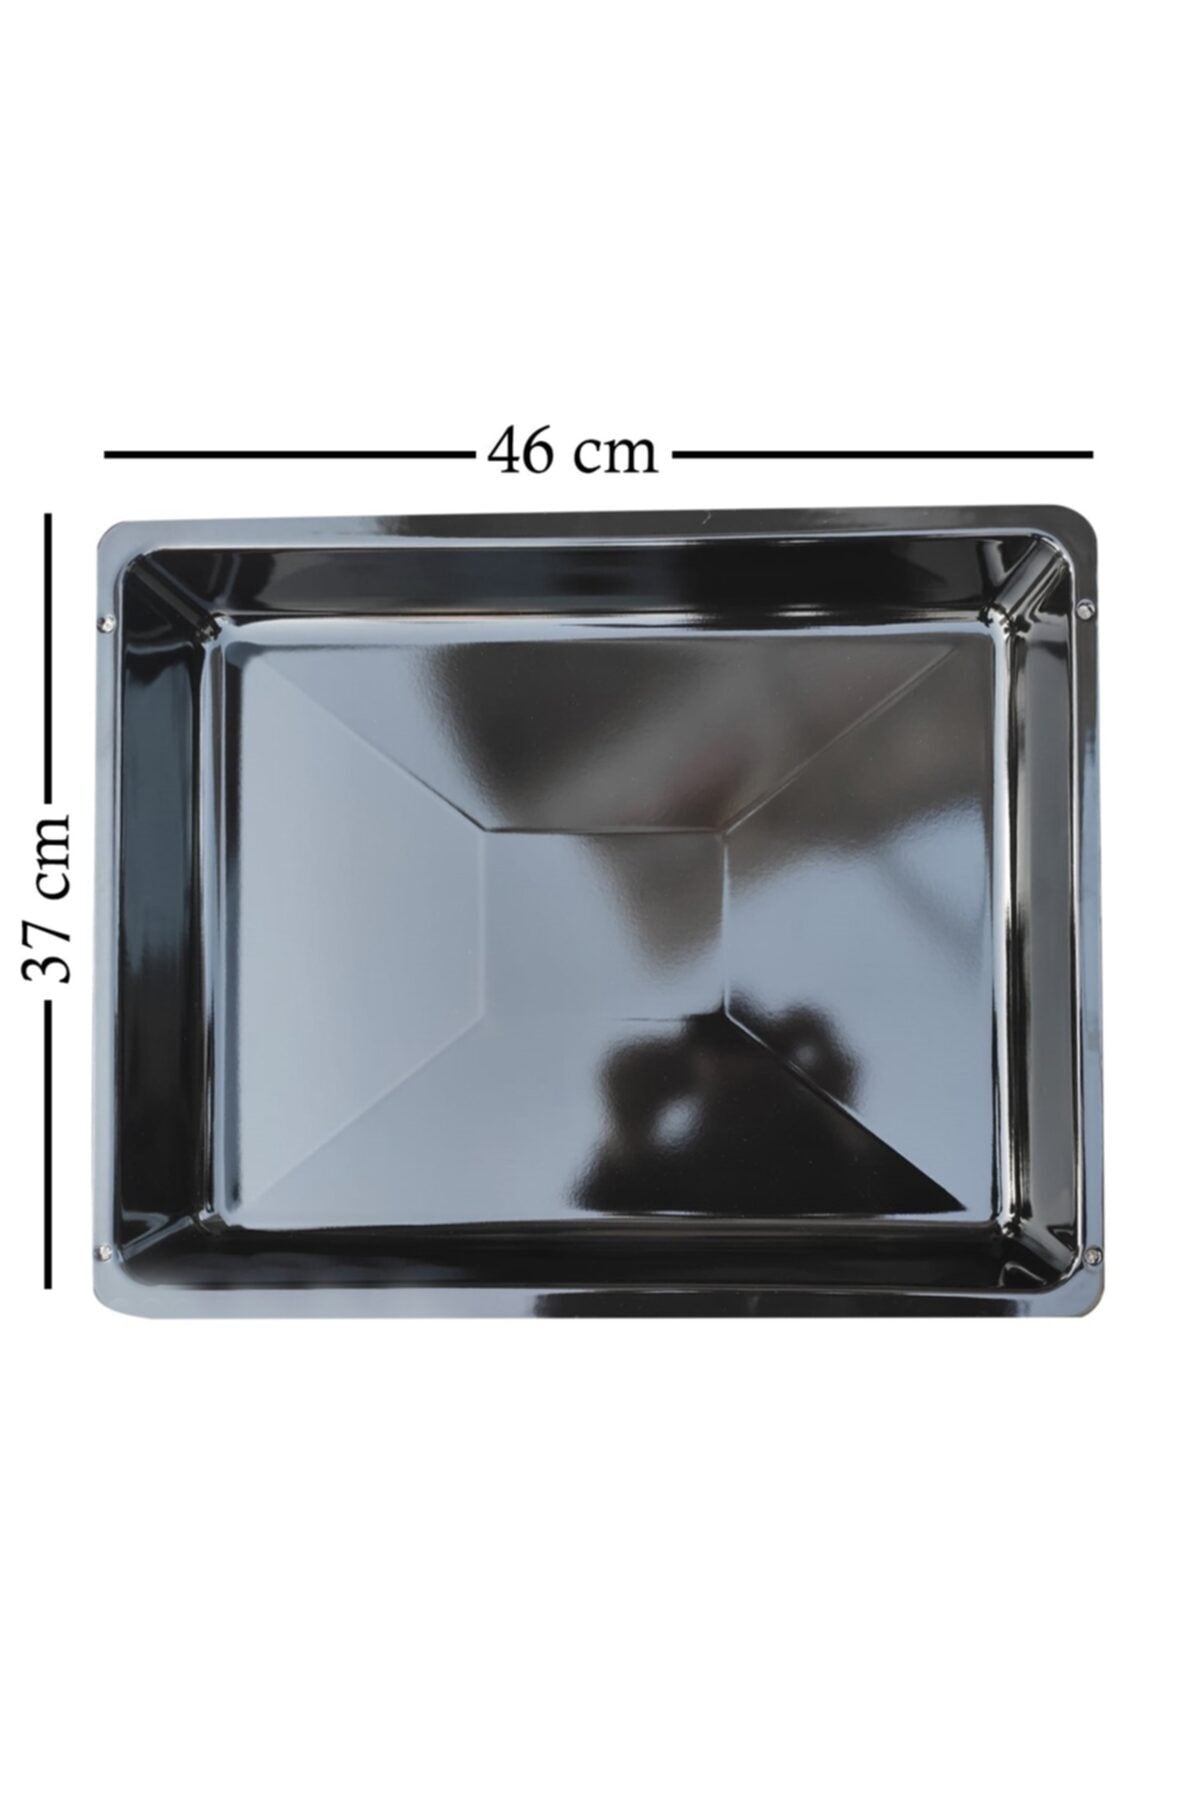 Xtra большая глубокая боковая антипригарная Оловянная жесть для запекания в печи (46 см x 37 см x 5 см)